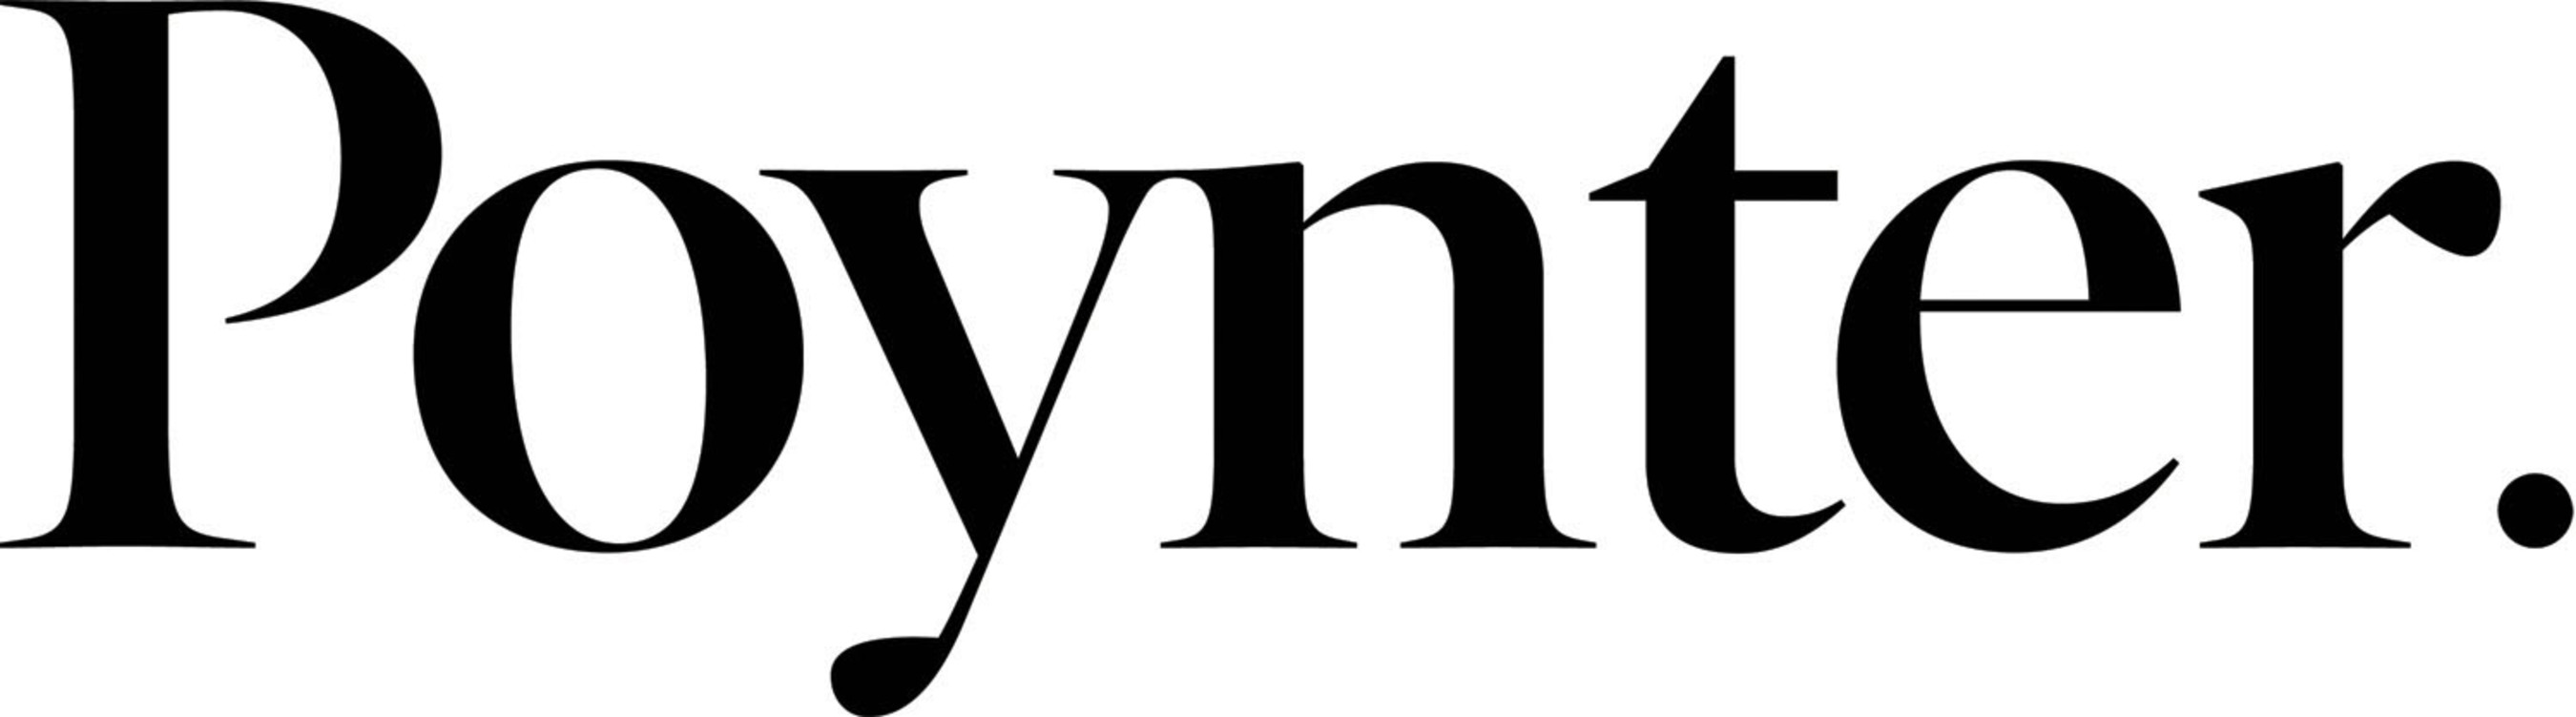 The Poynter Institute for Media Studies. (PRNewsFoto/The Poynter Institute) (PRNewsFoto/The Poynter Institute)